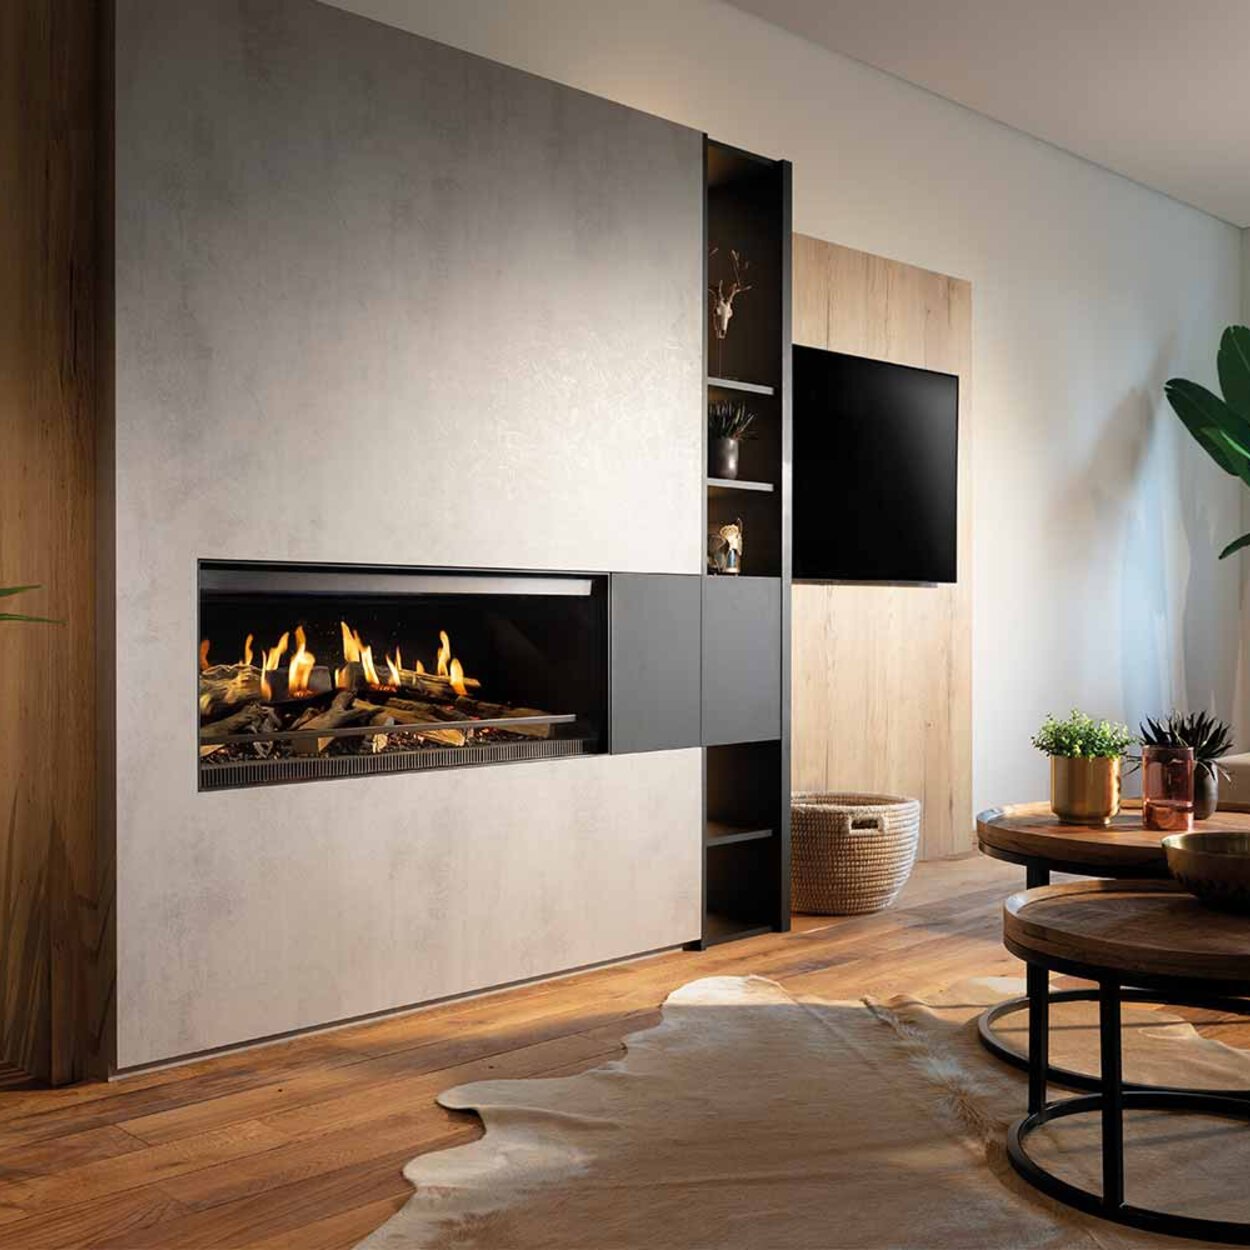 Il caminetto elettrico E-One 100 fronteggia un soggiorno moderno con piante integrate in una parete di cemento.